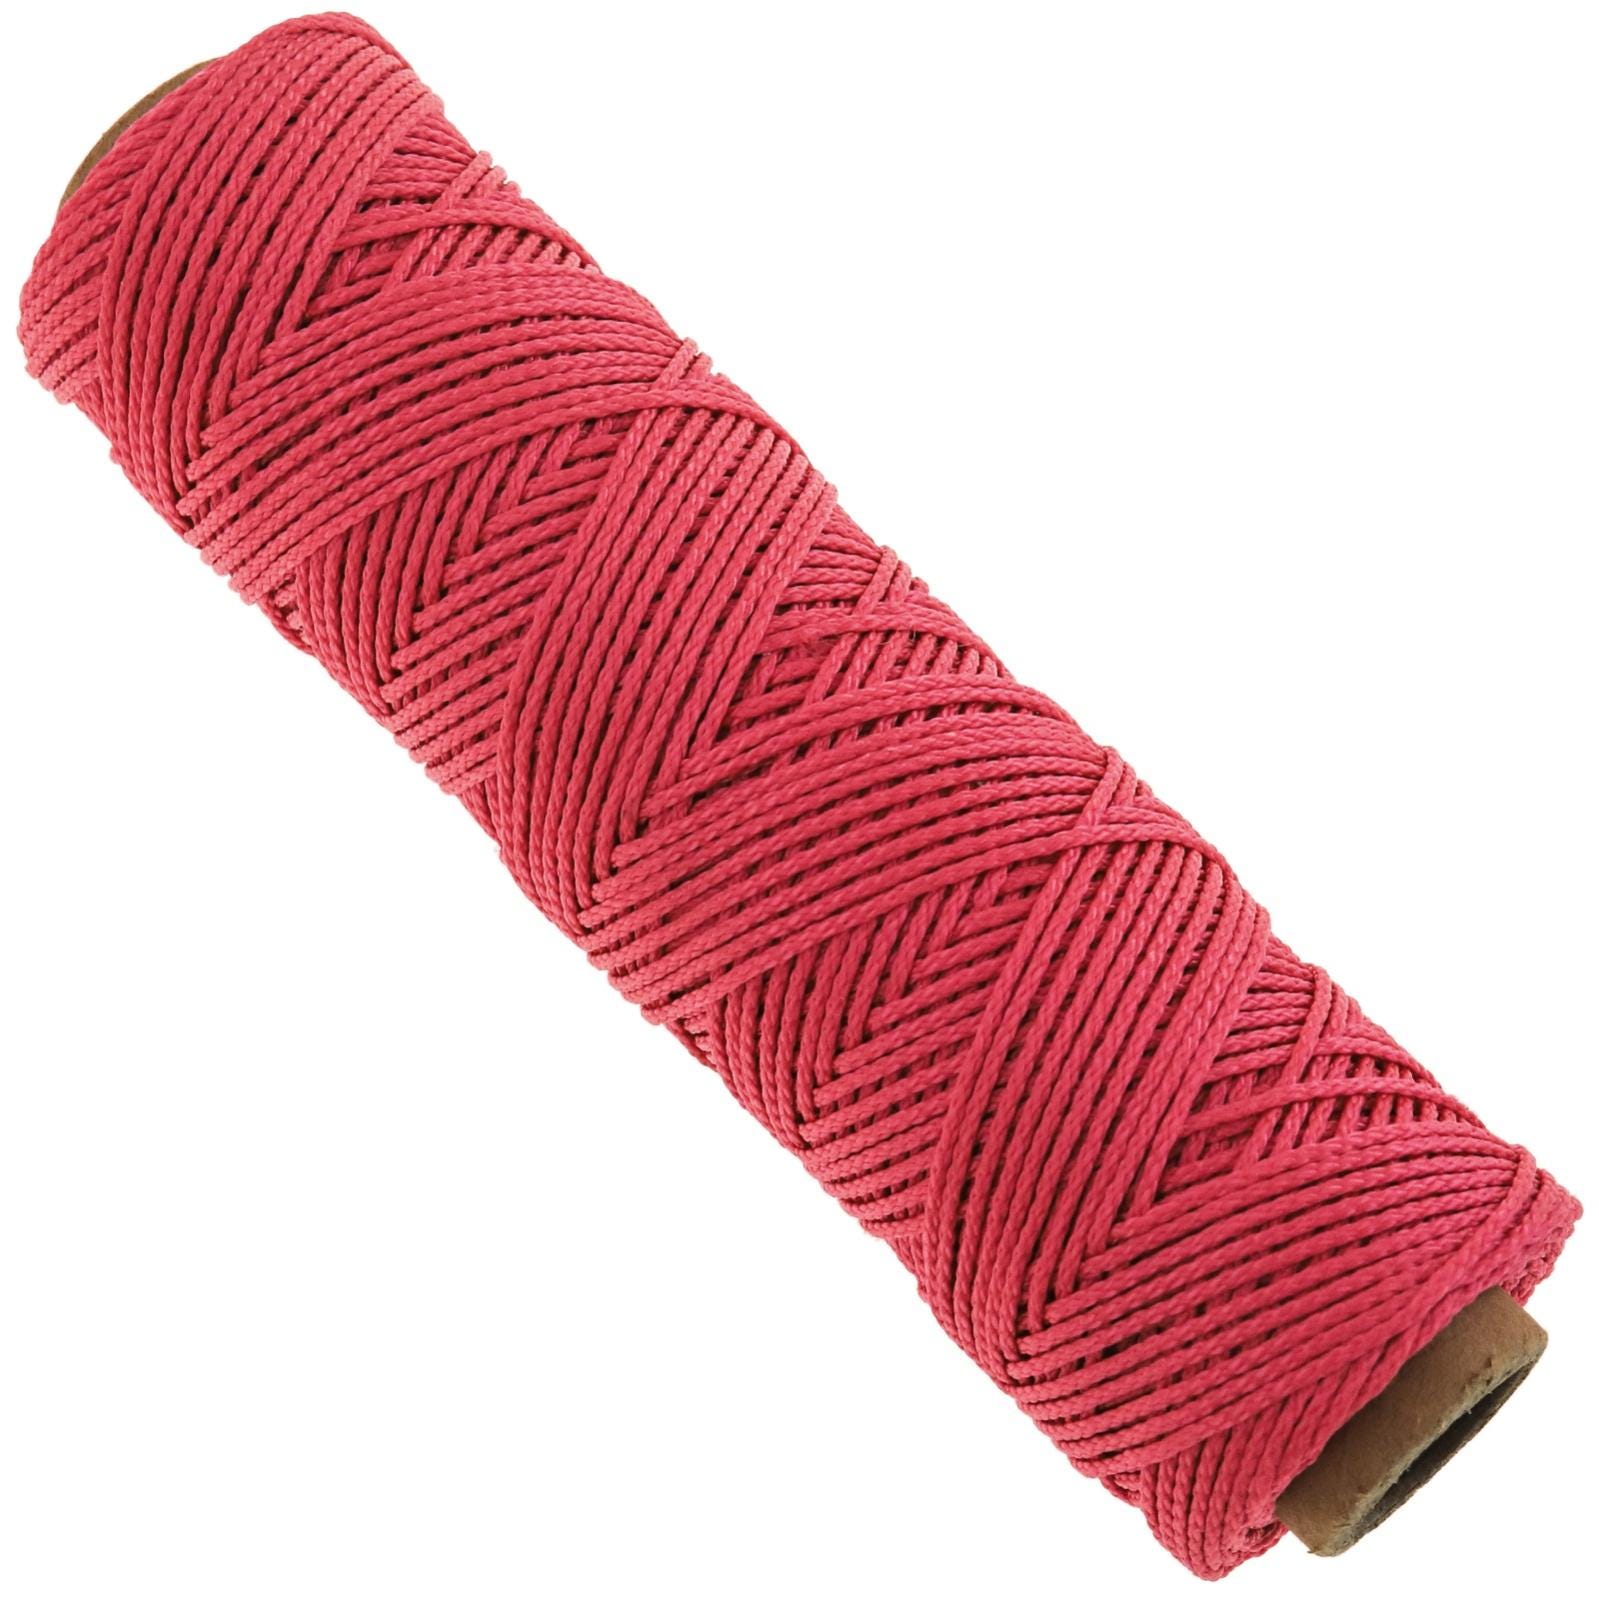 Corde conçue sous forme de tresse en nylon rose 50 mx 1 mm